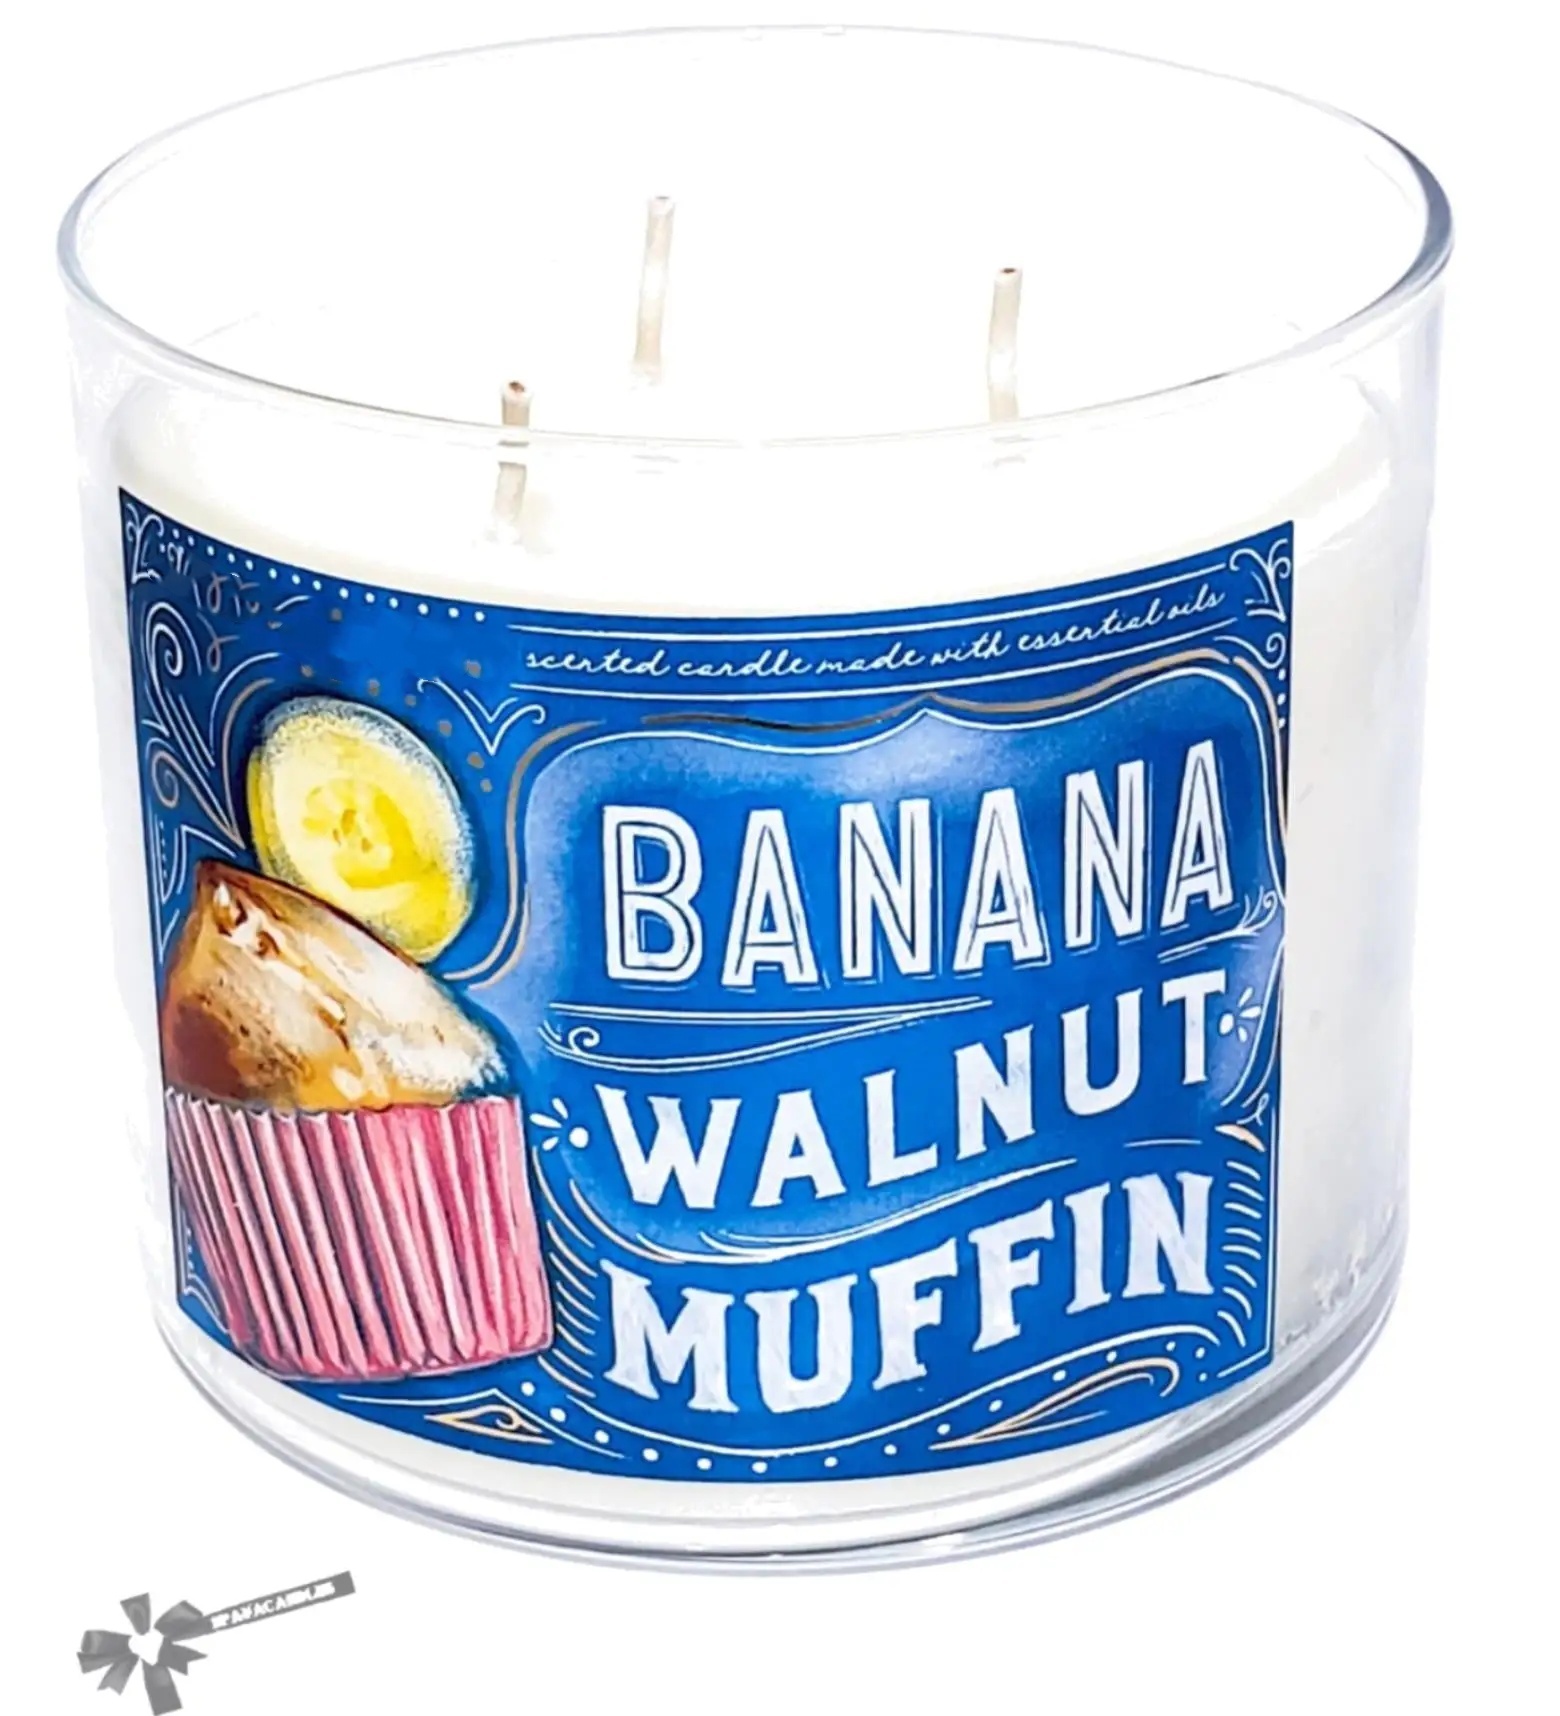 Banana Walnut Muffin 3 Wick Candle 14.5 oz Festive Jar